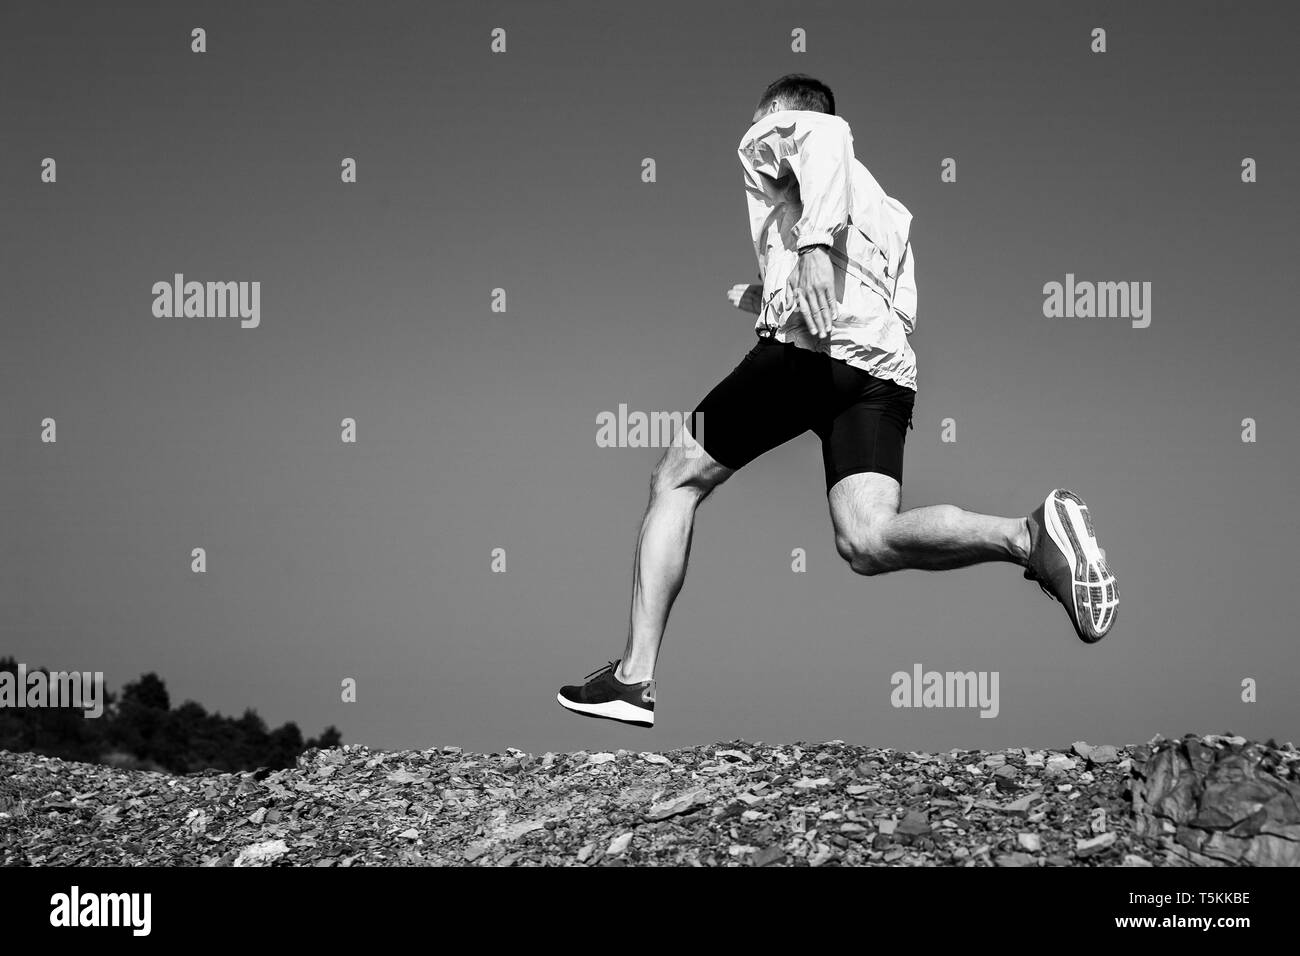 Mann runner läuft Stein trail Schwarz und Weiß Foto Stockfoto